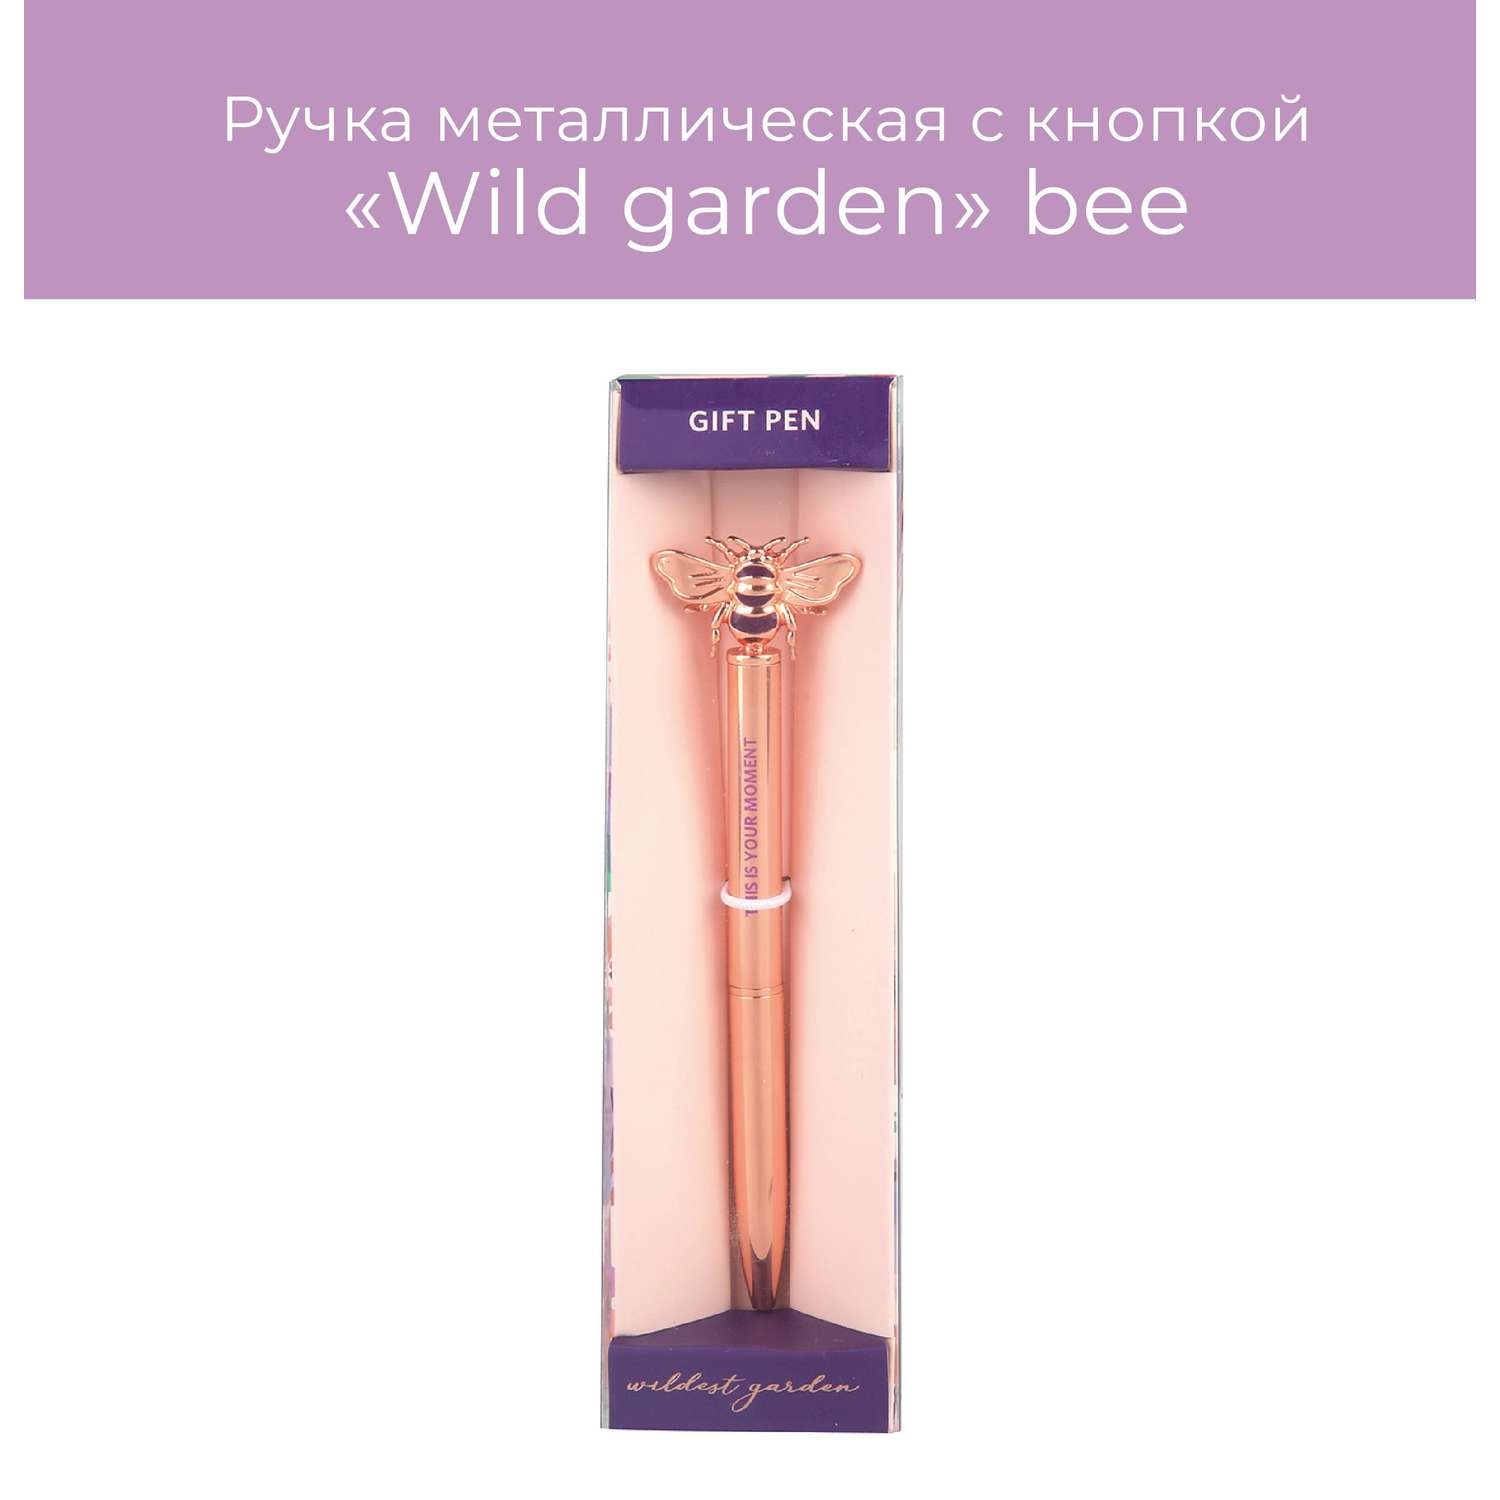 Ручка металлическая с кнопкой N Family Wild garden bee - фото 1